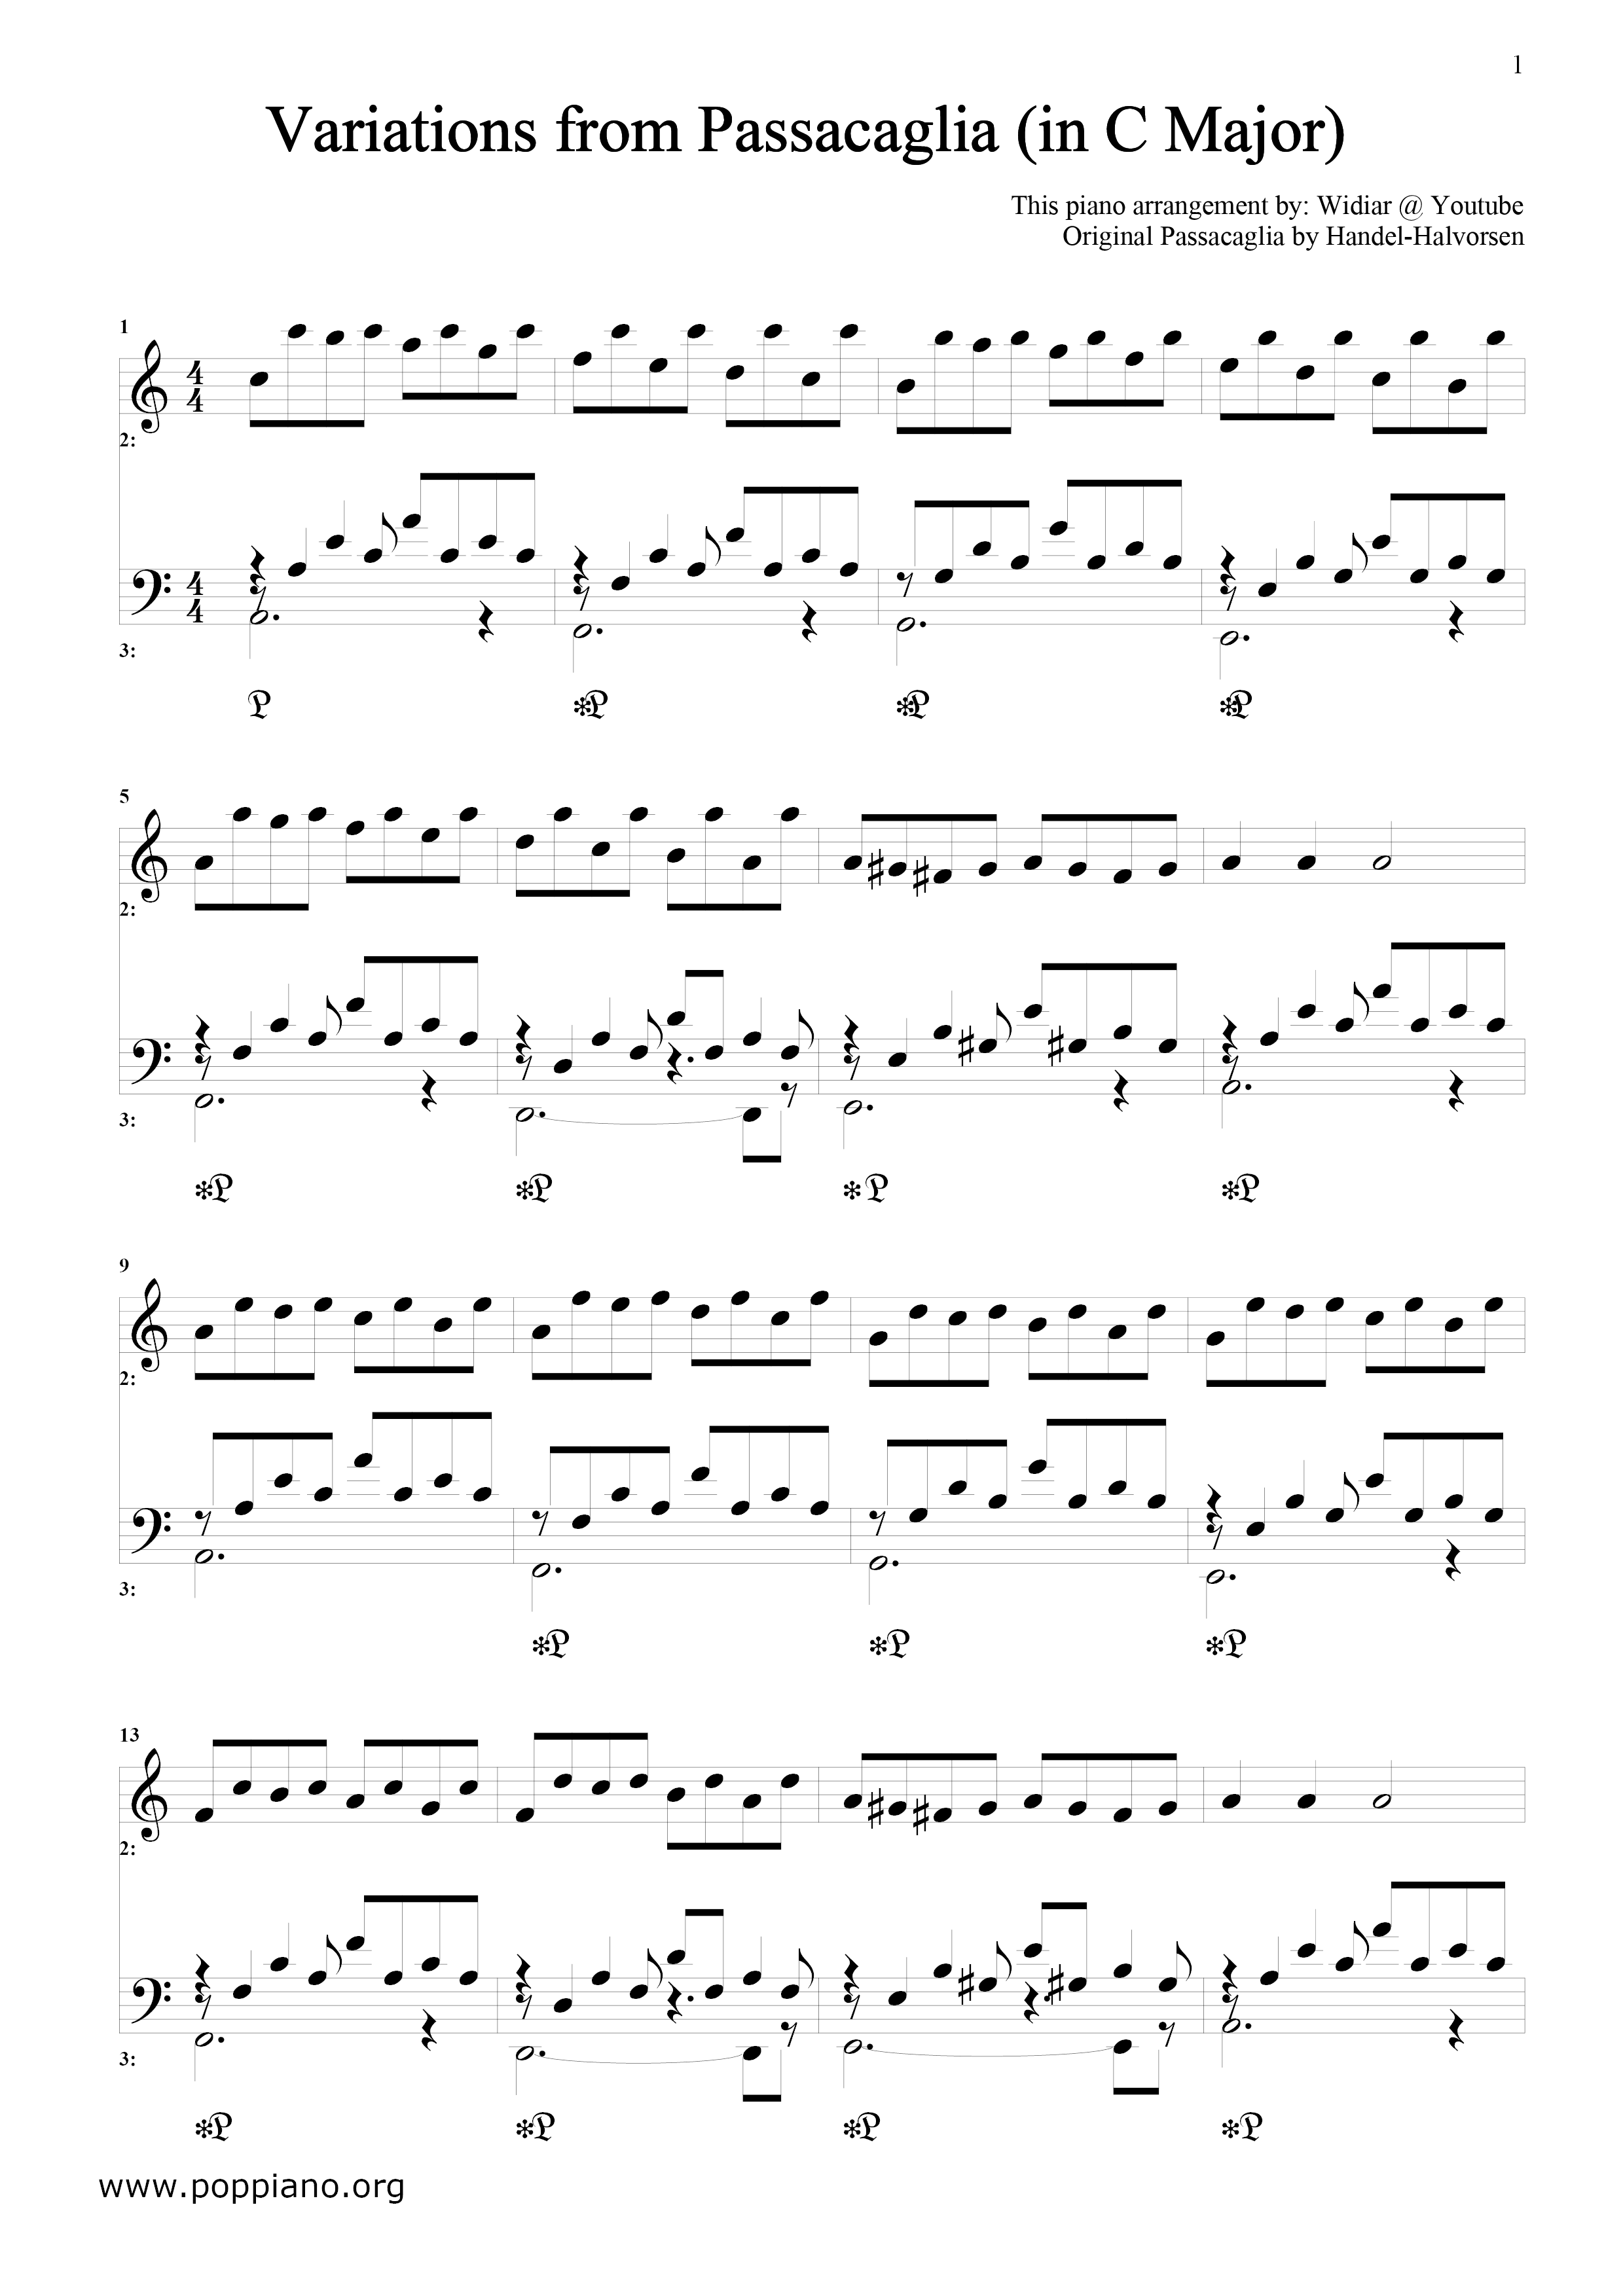 Variations of Passacaglia Score